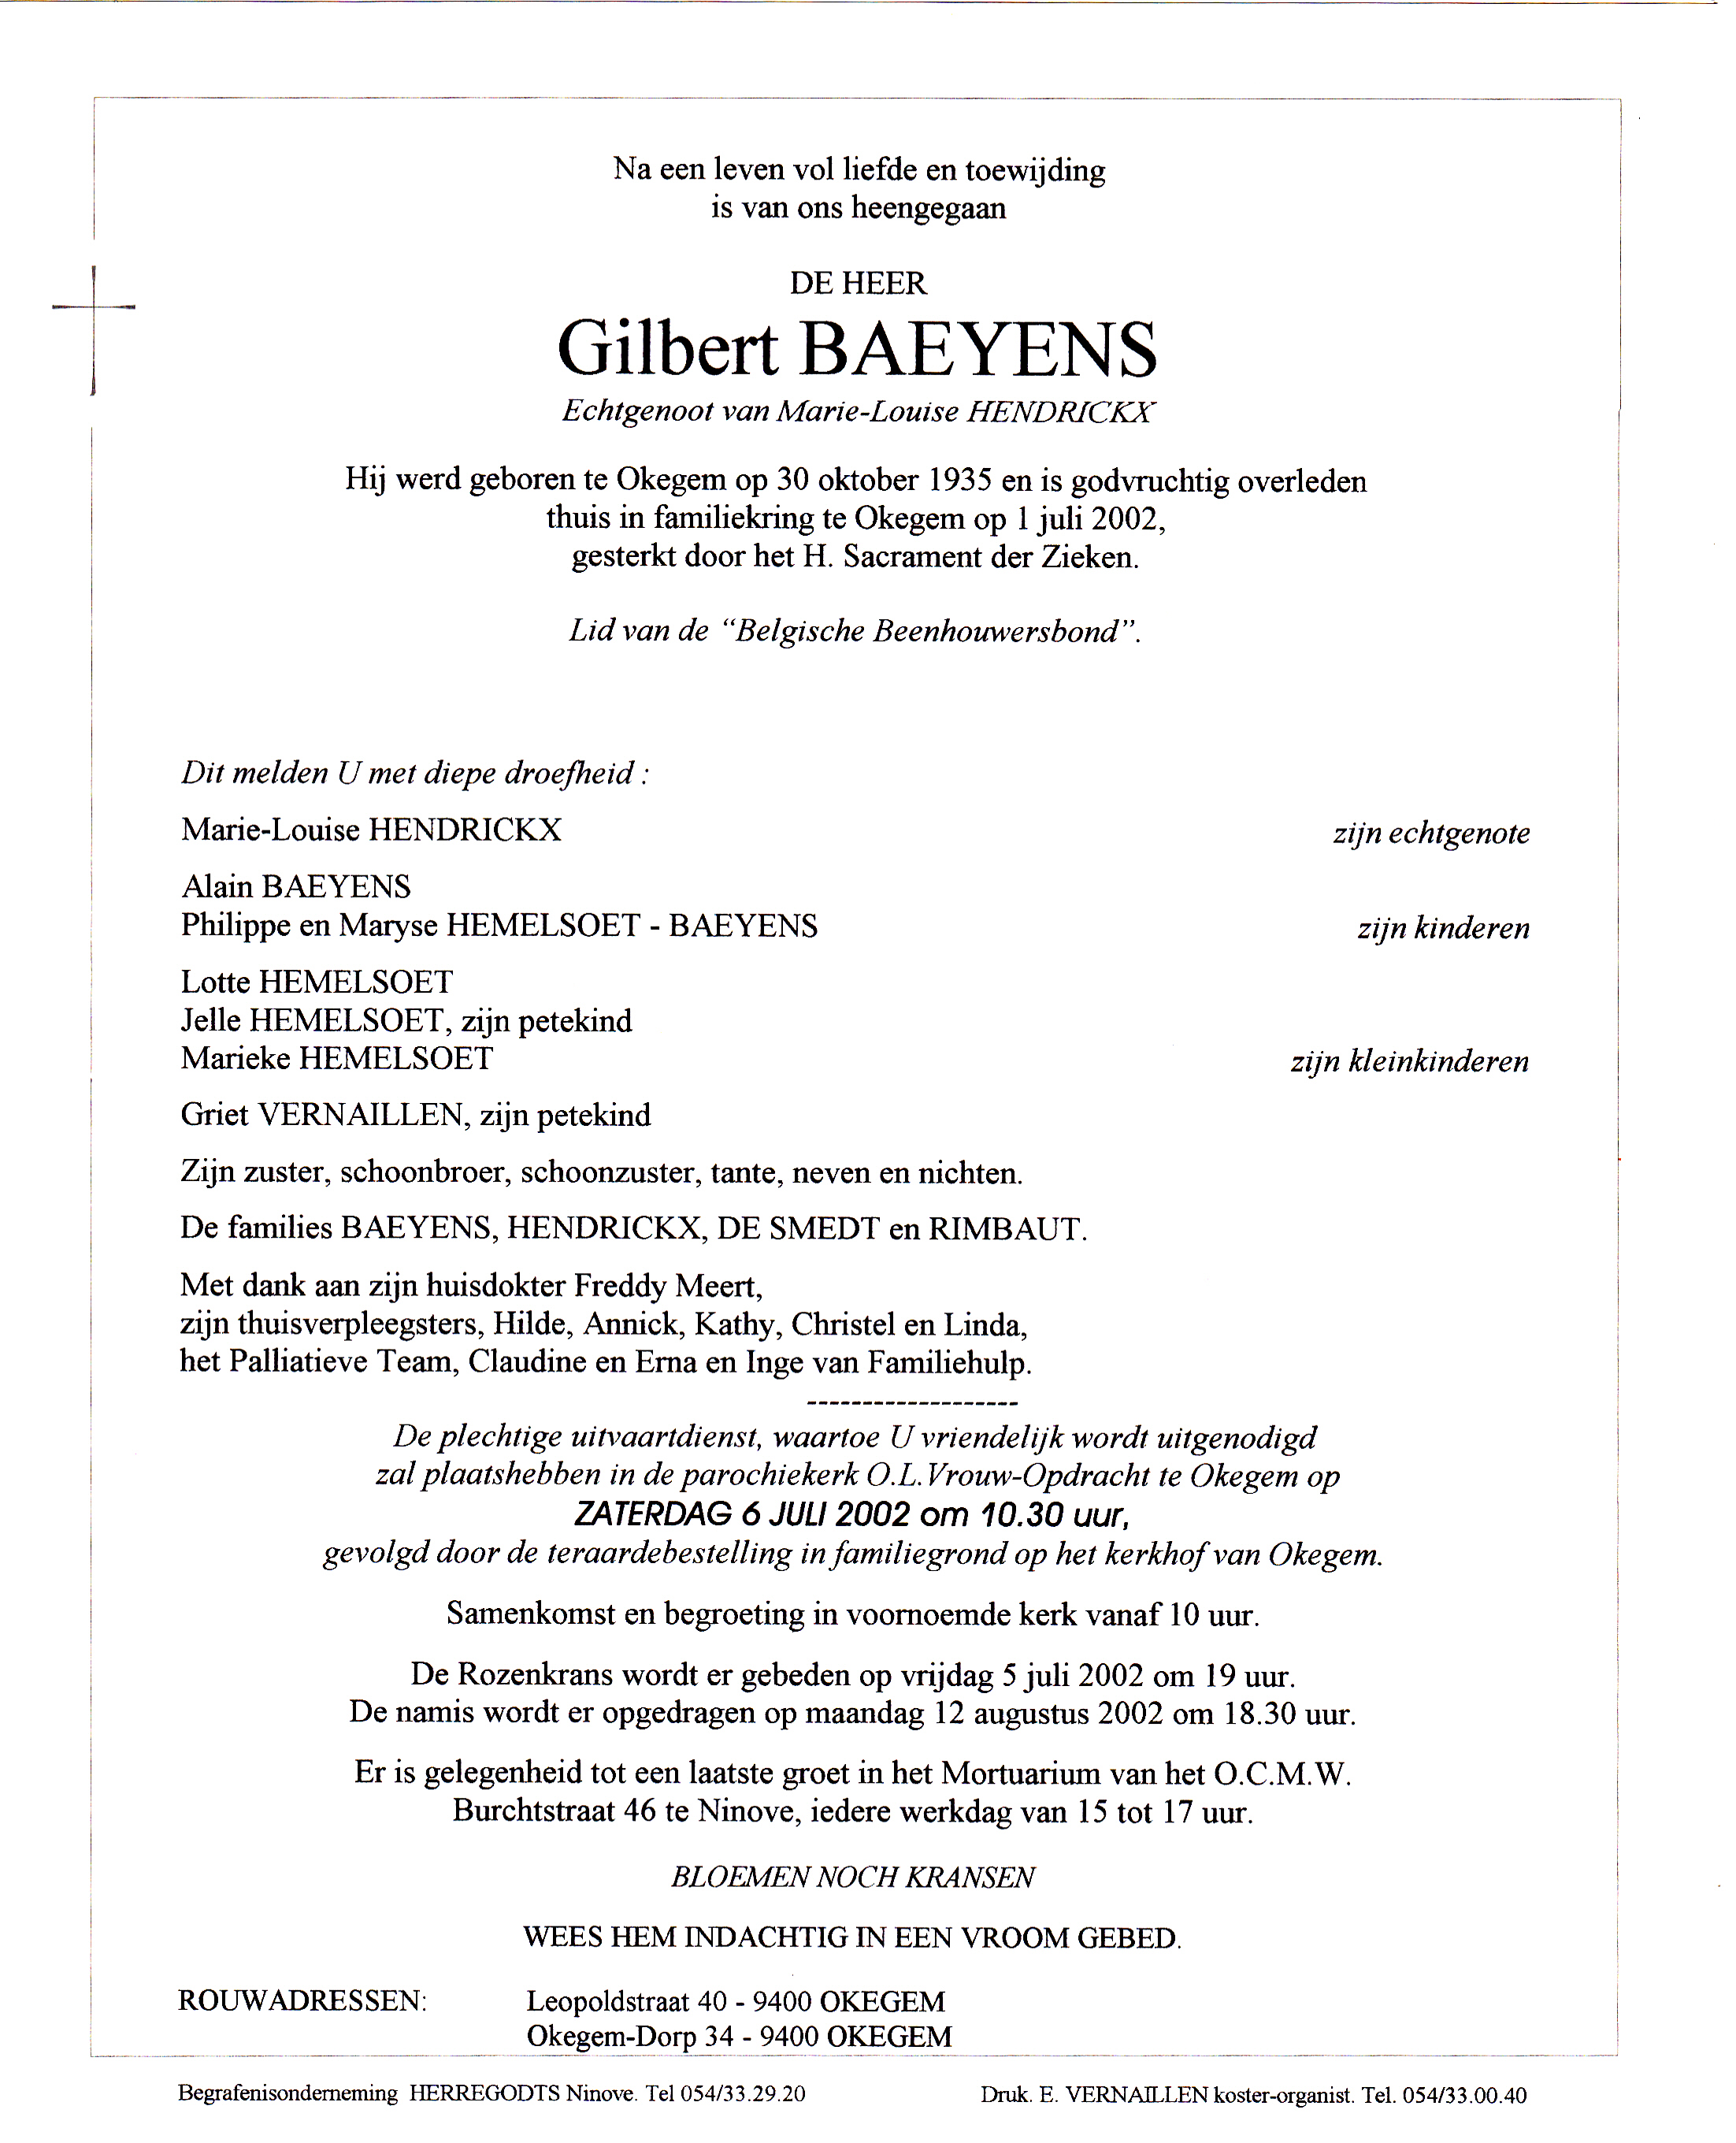 Baeyens Gilbert   